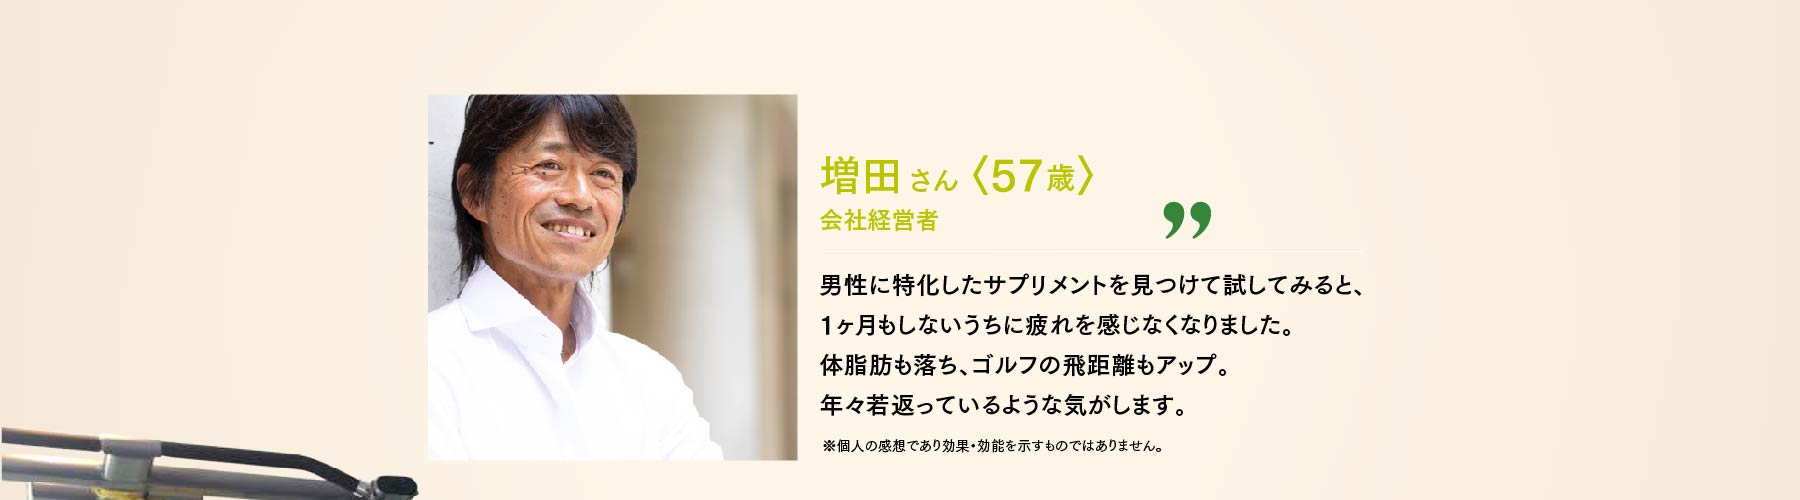 増田さん 57歳 会社経営者